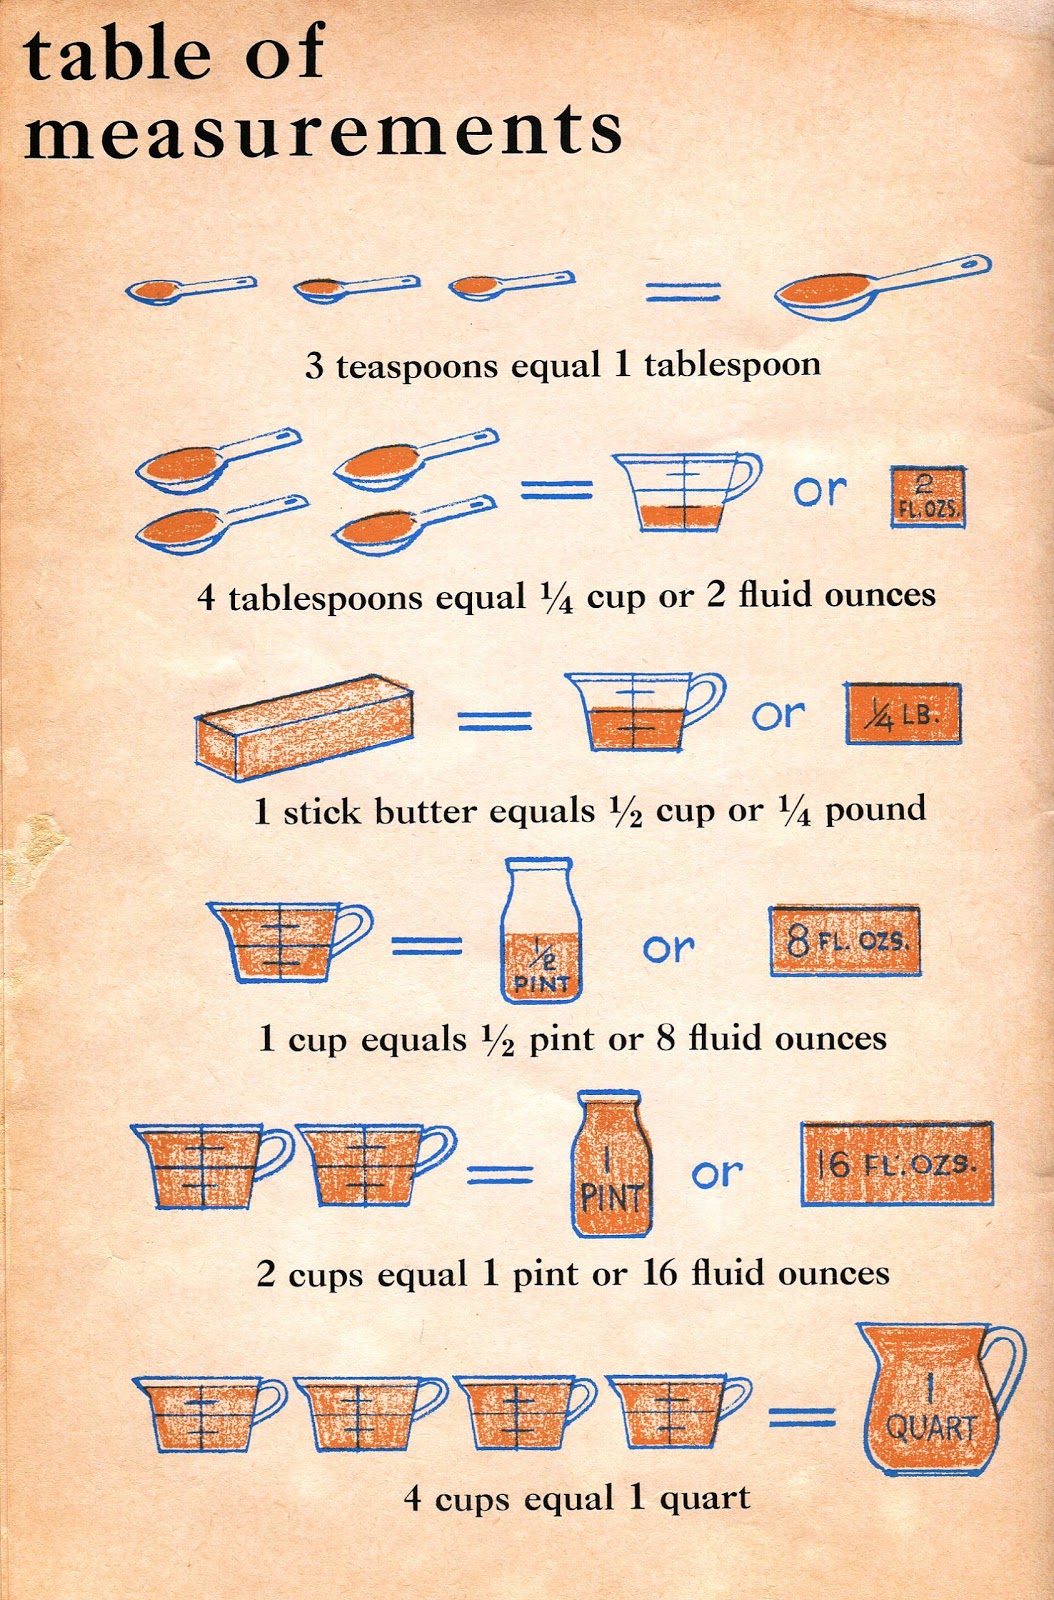 bethsoil-kitchen-measurement-table